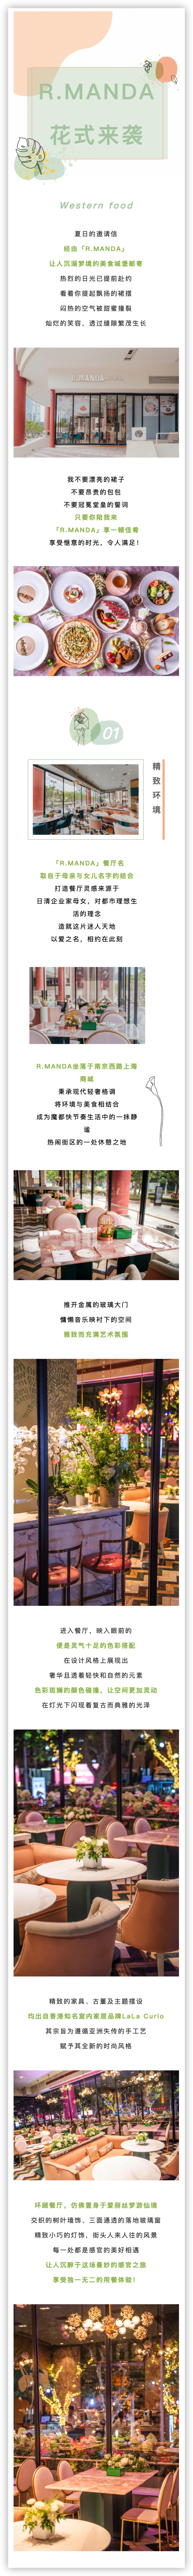 上海南京西路R.MANDA西餐，238元抢门市价1022元双人套餐！